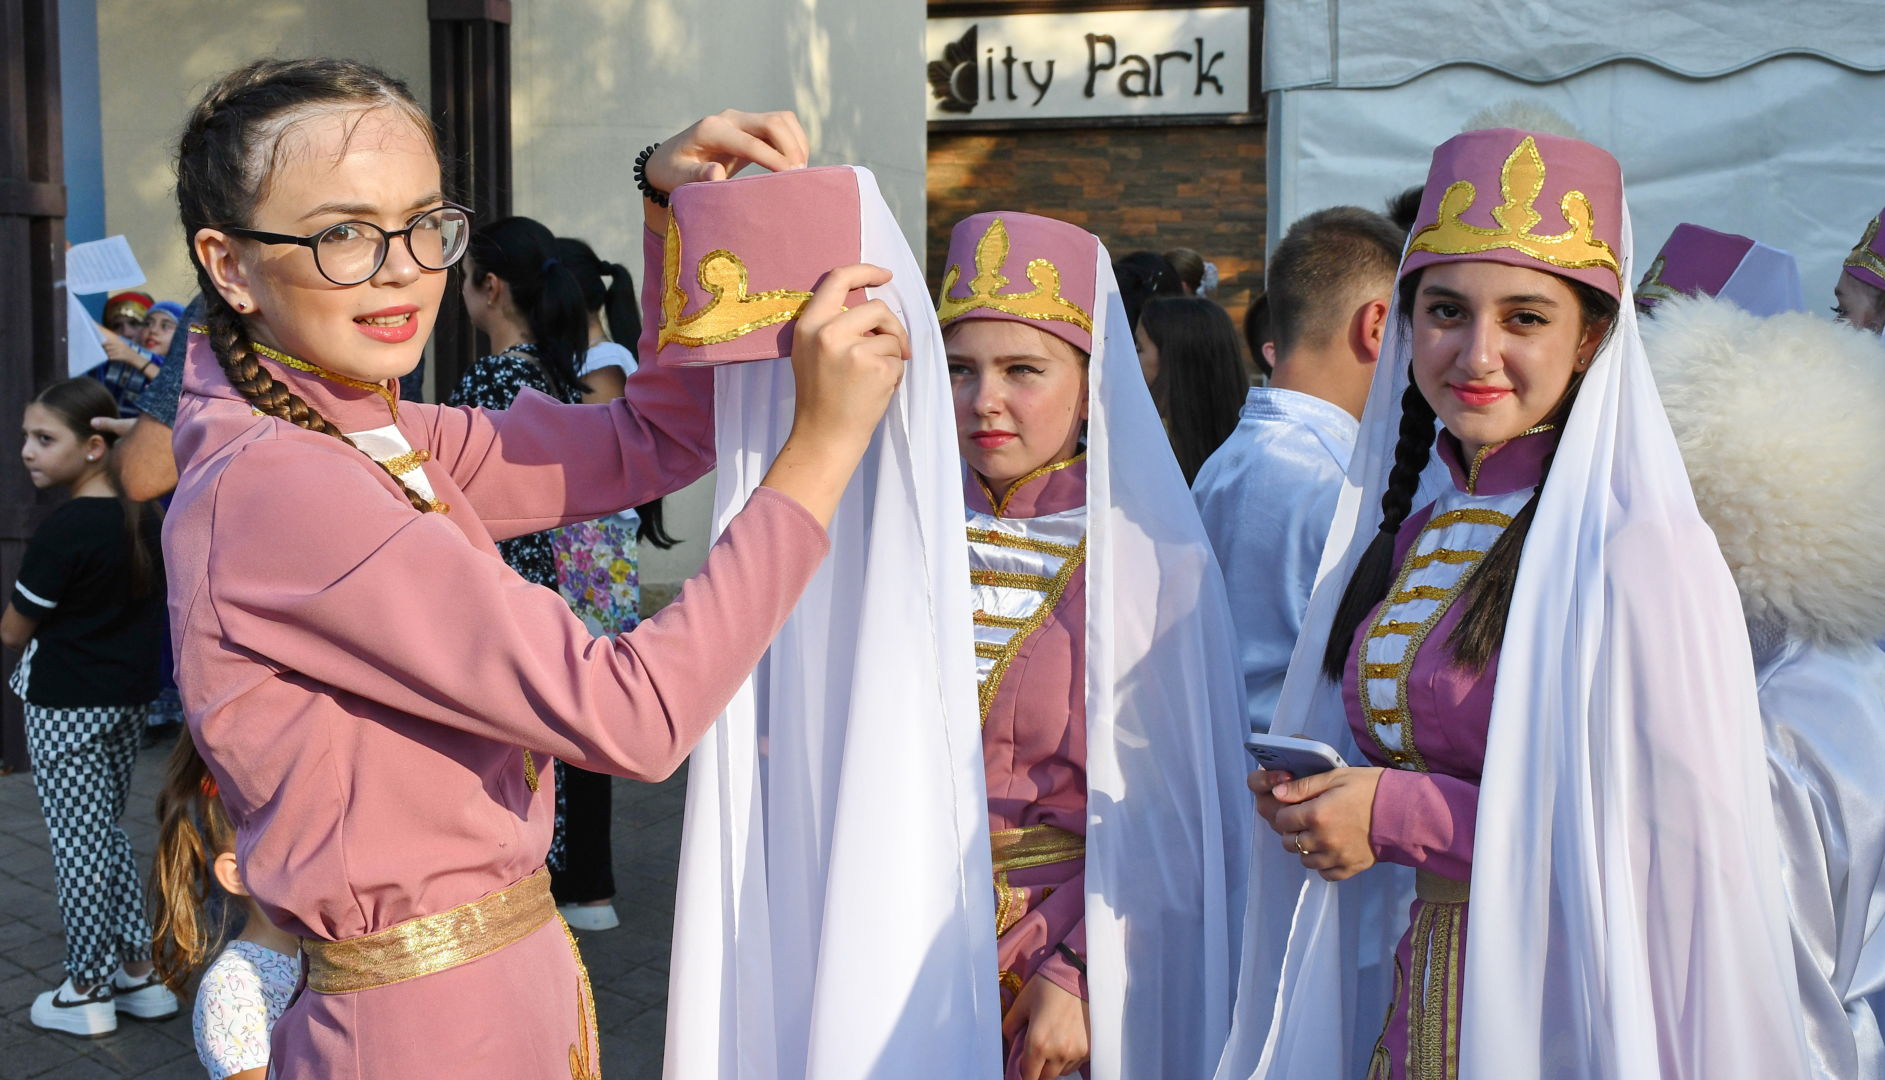 Национальные культурные традиции объединились в белореченском хороводе дружбы